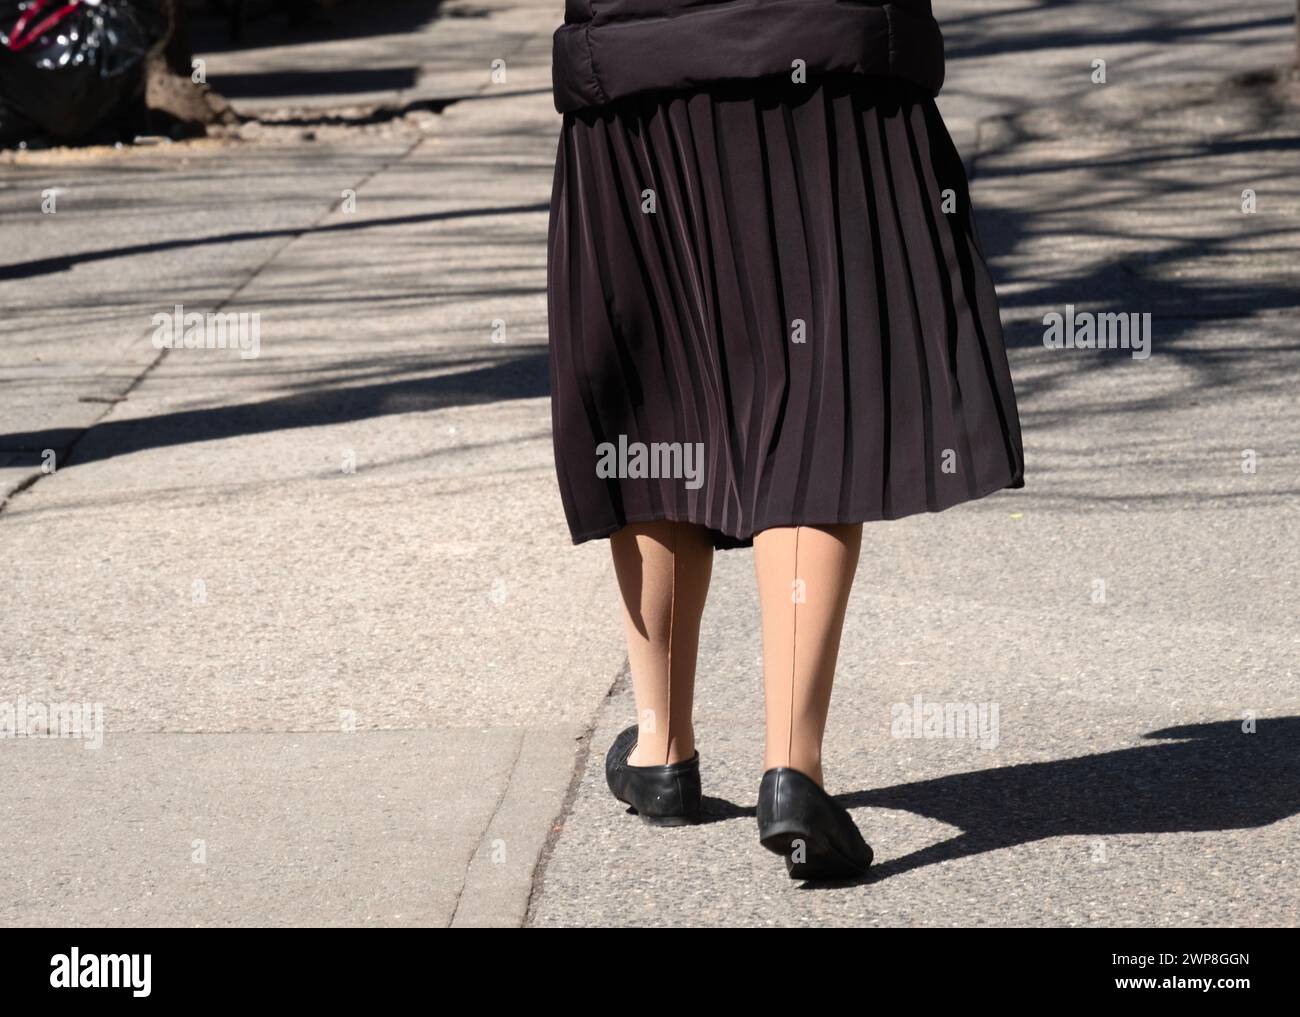 MODESTIE JUIVE. Une femme juive orthodoxe non identifiable portant des bas opaques en nylon avec une couture. Certains les appellent « bas pare-balles ». Banque D'Images